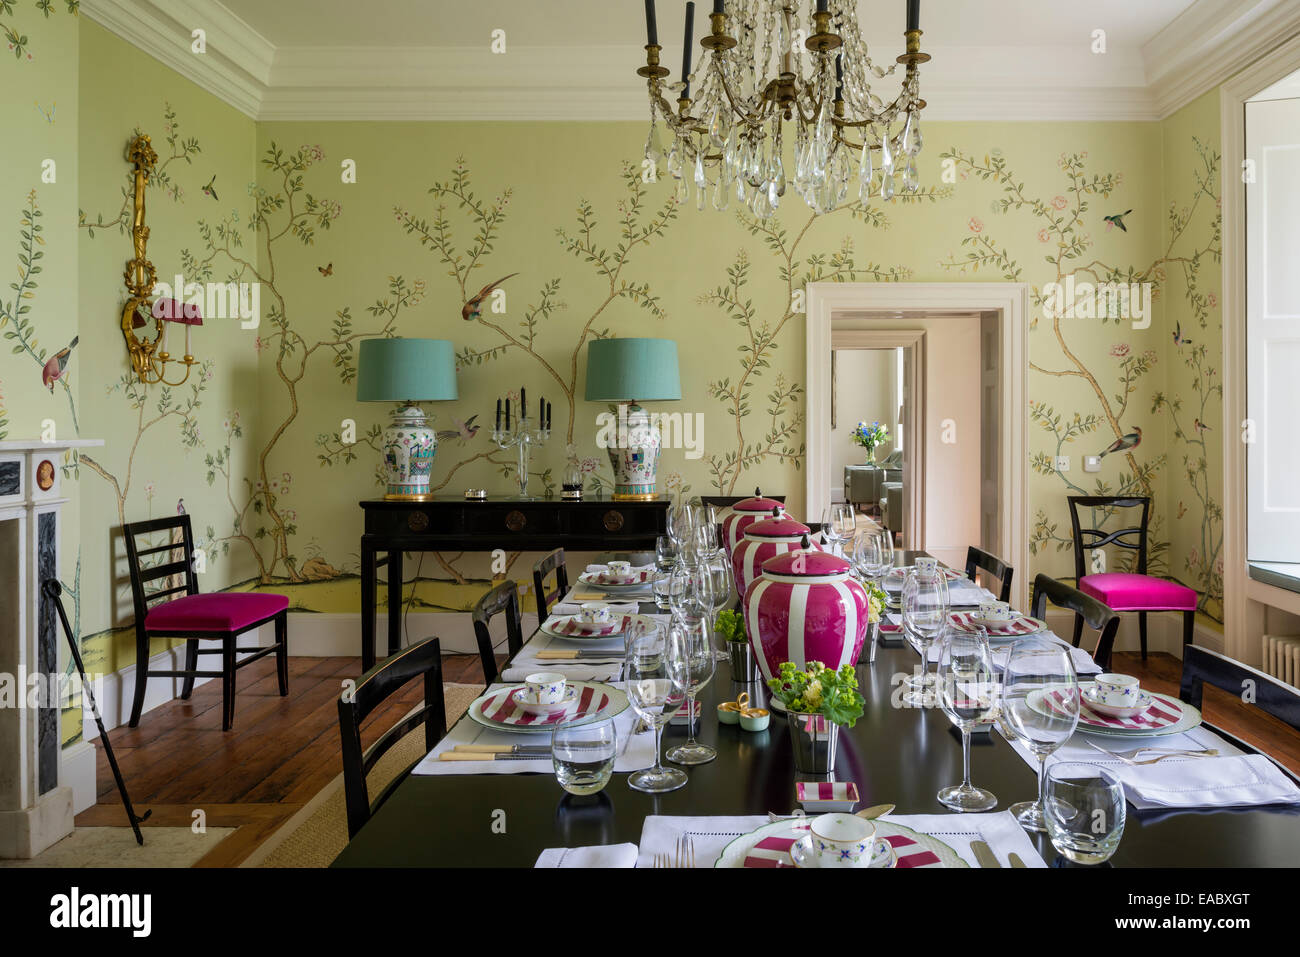 De Gournay Chinoiserie wallpaper dans la salle à manger avec lustre en cristal à la française Banque D'Images